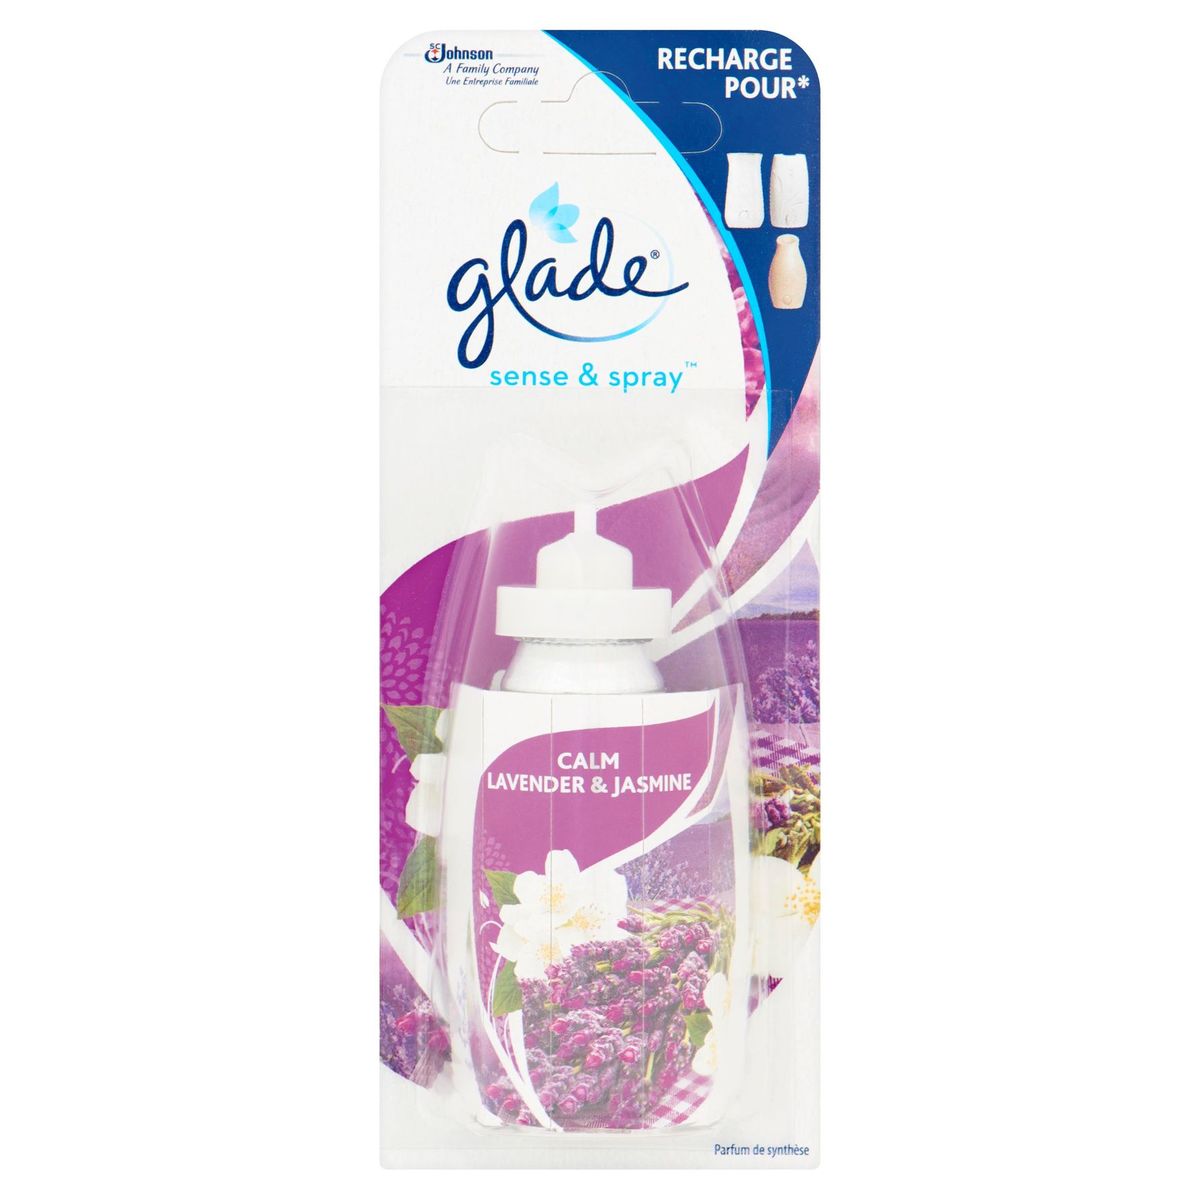 Glade Sense & Spray Calm Lavender & Jasmine 18 ml